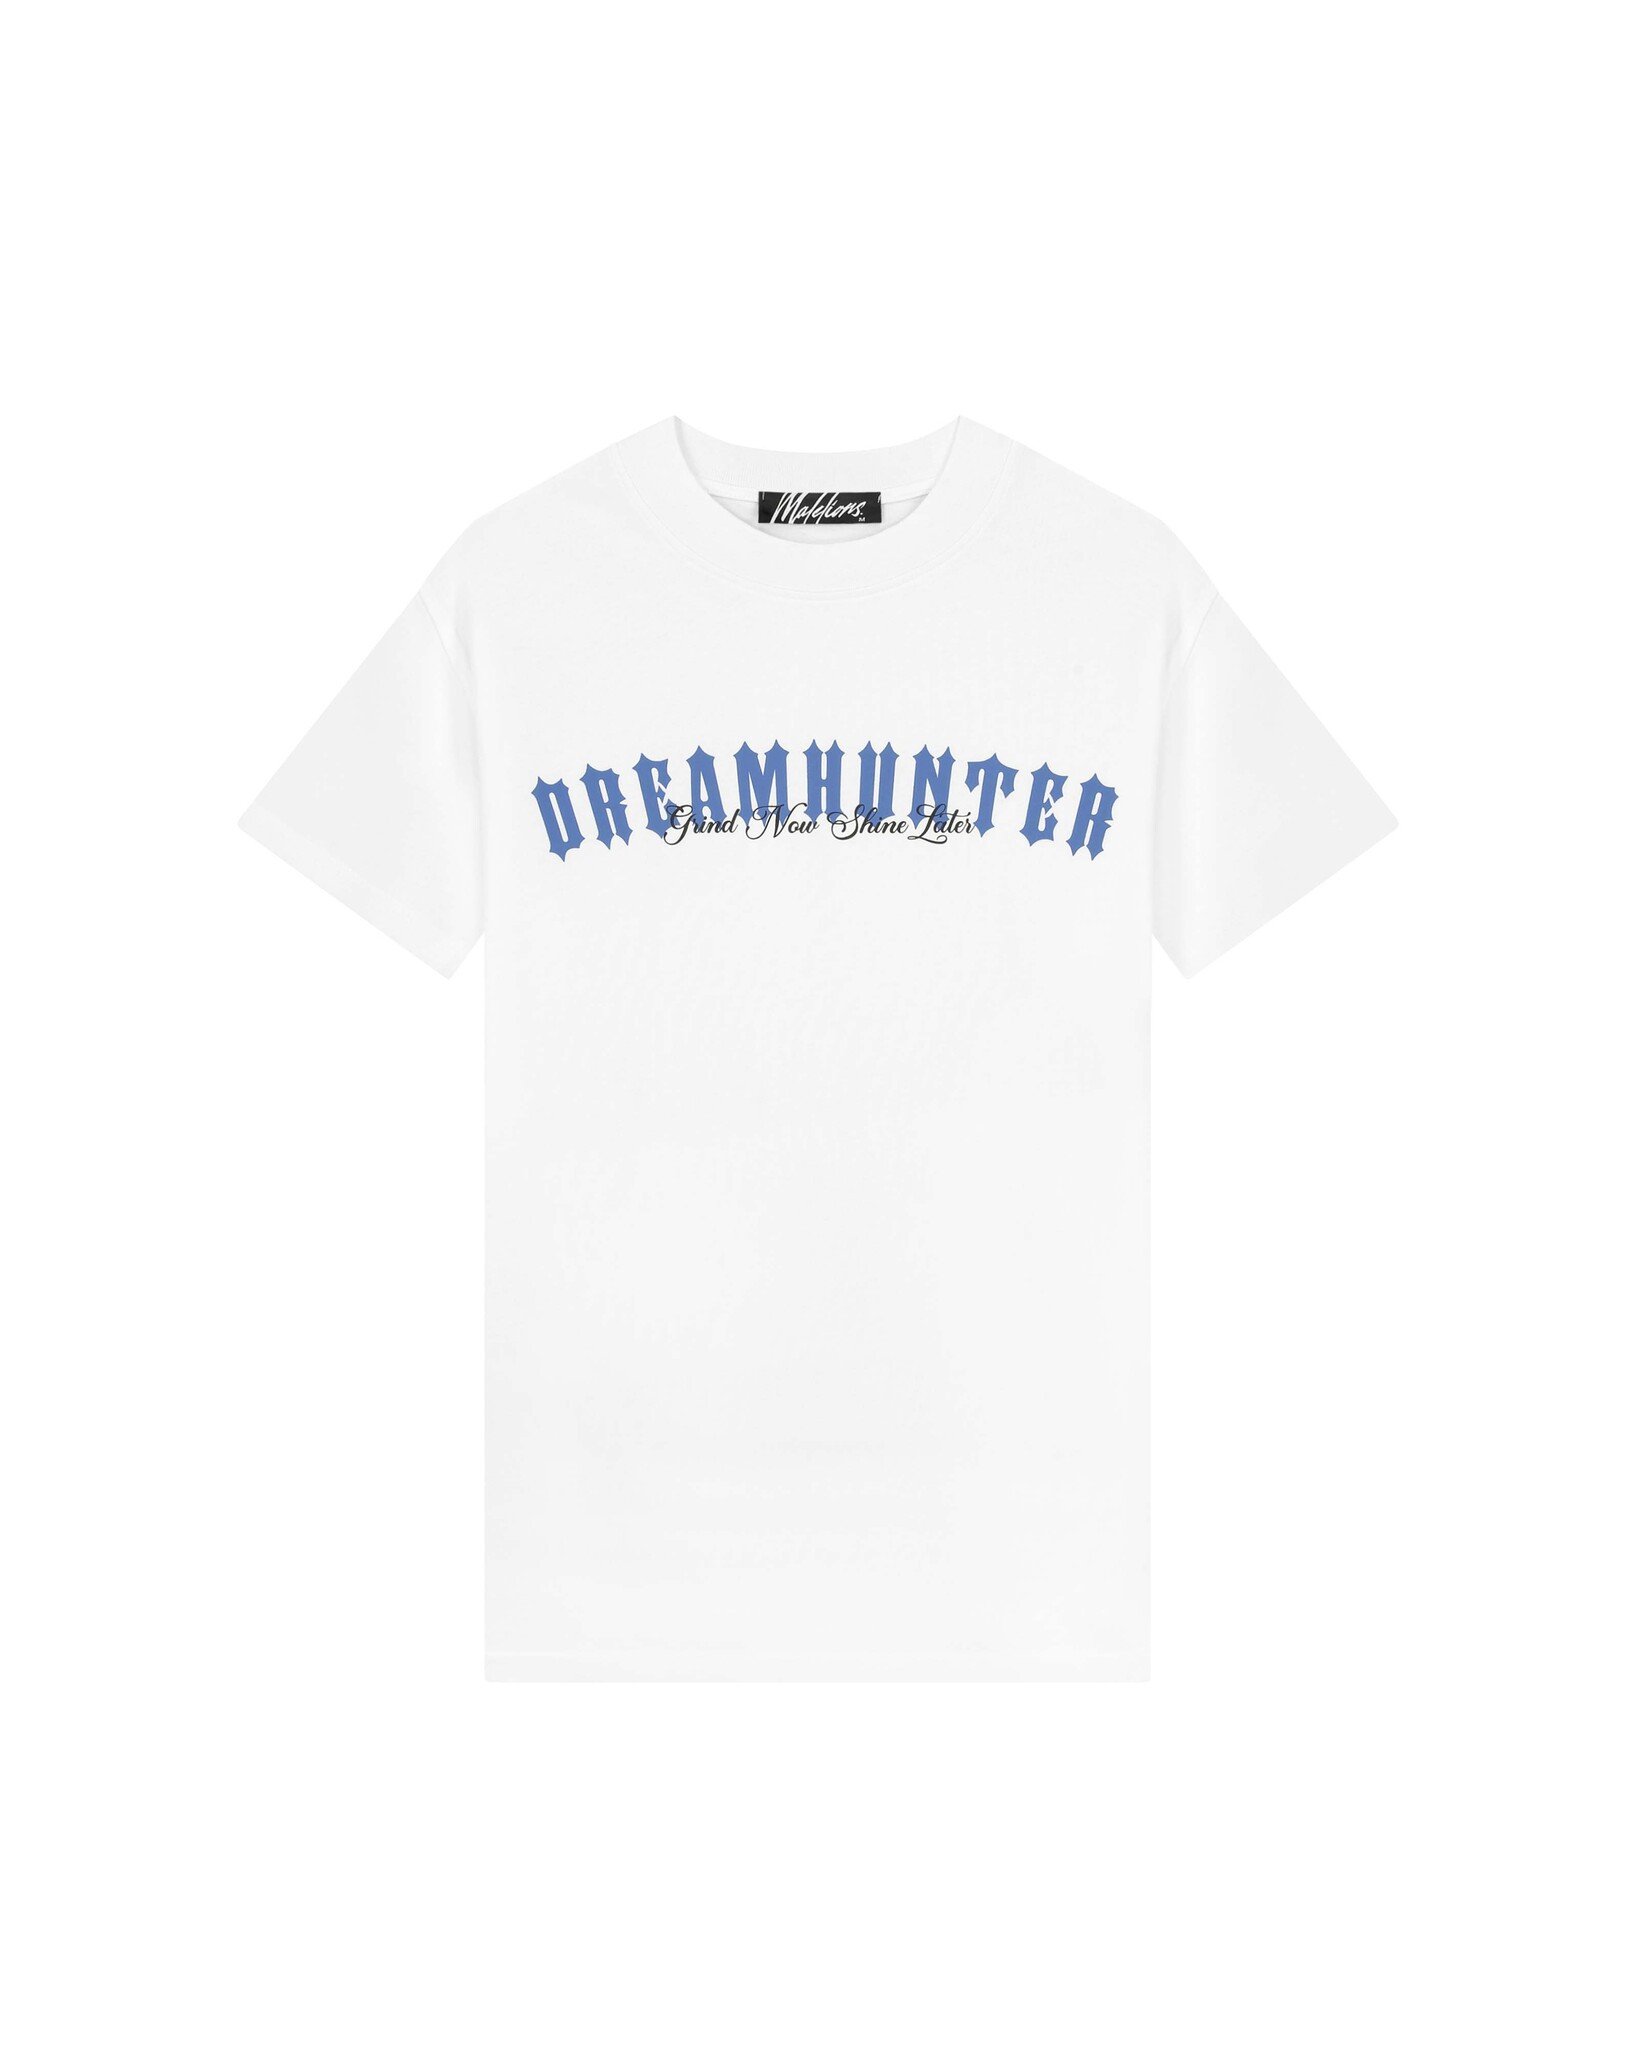 Malelions Men Dreamhunter T-Shirt - White/Cobalt Blue